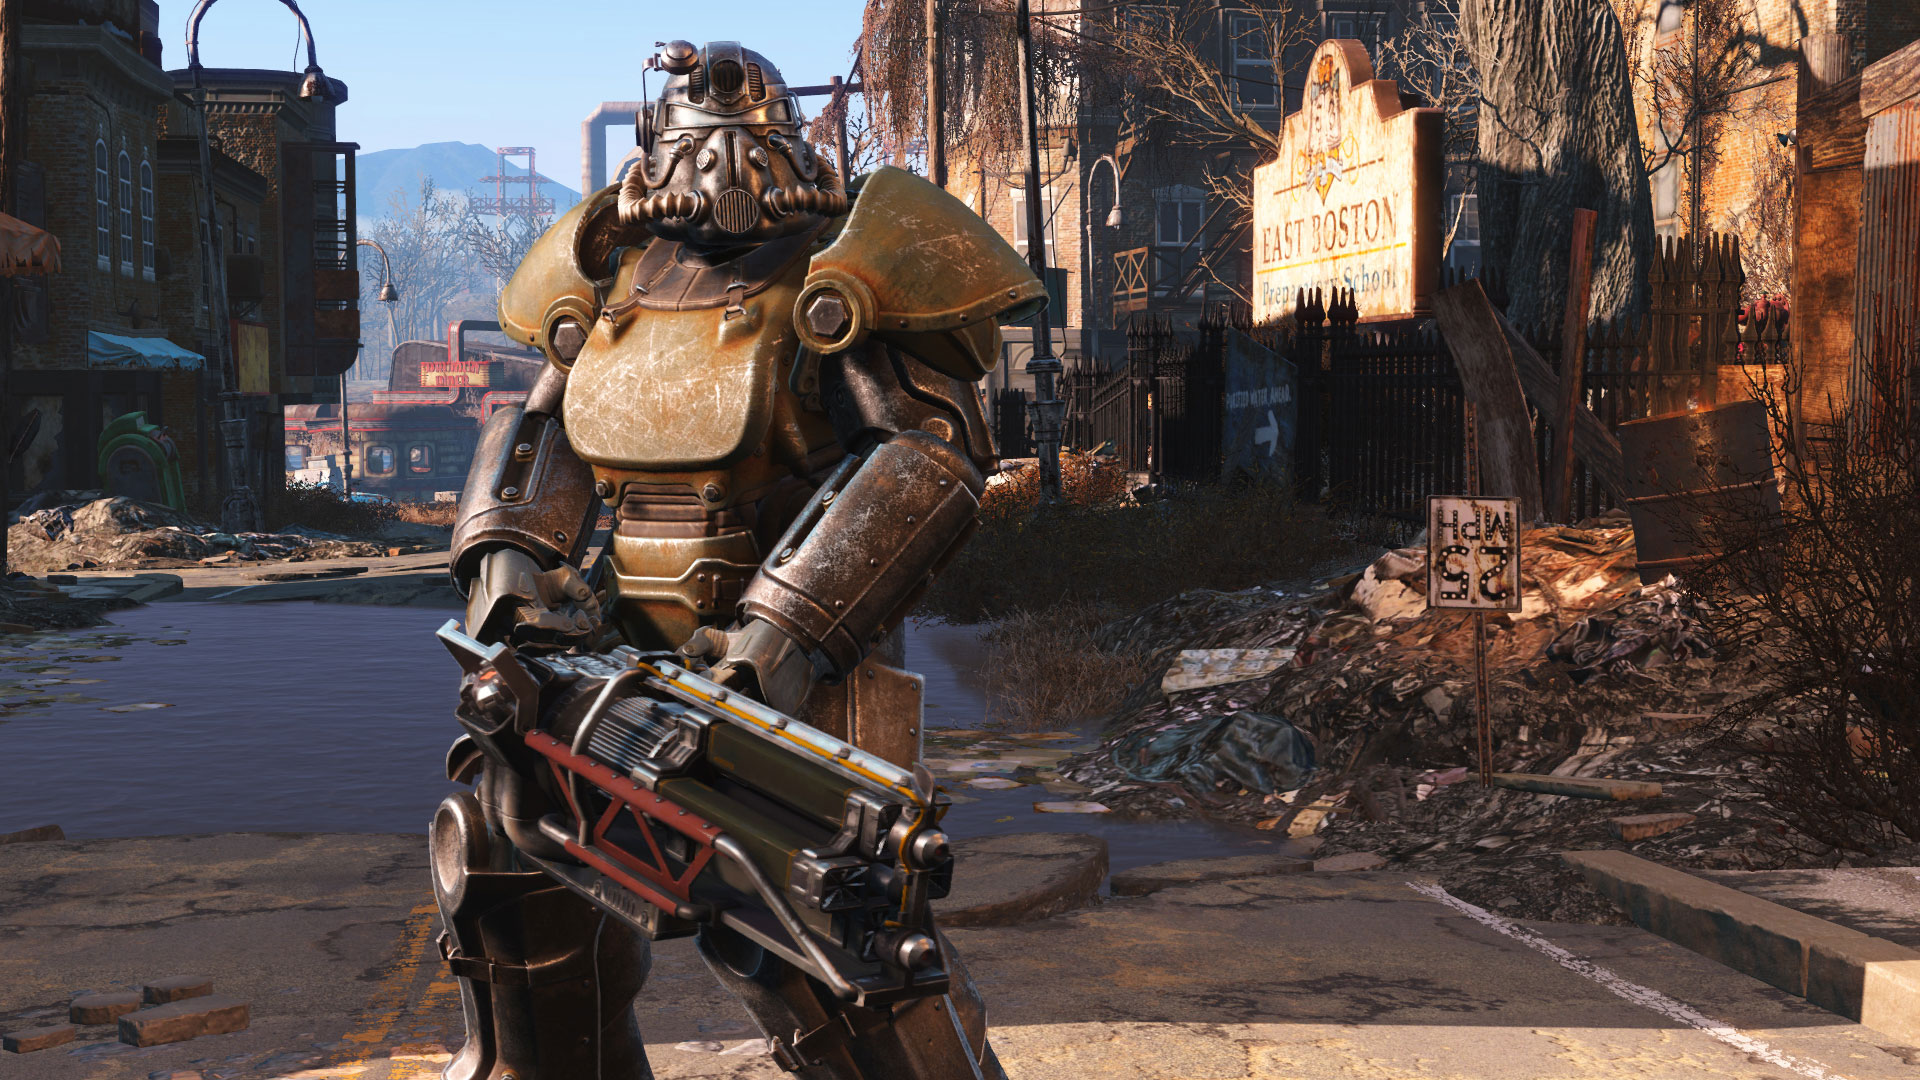 ارائه نگاهی بهتر در تصاویر جدید از پشت صحنه سریال Fallout